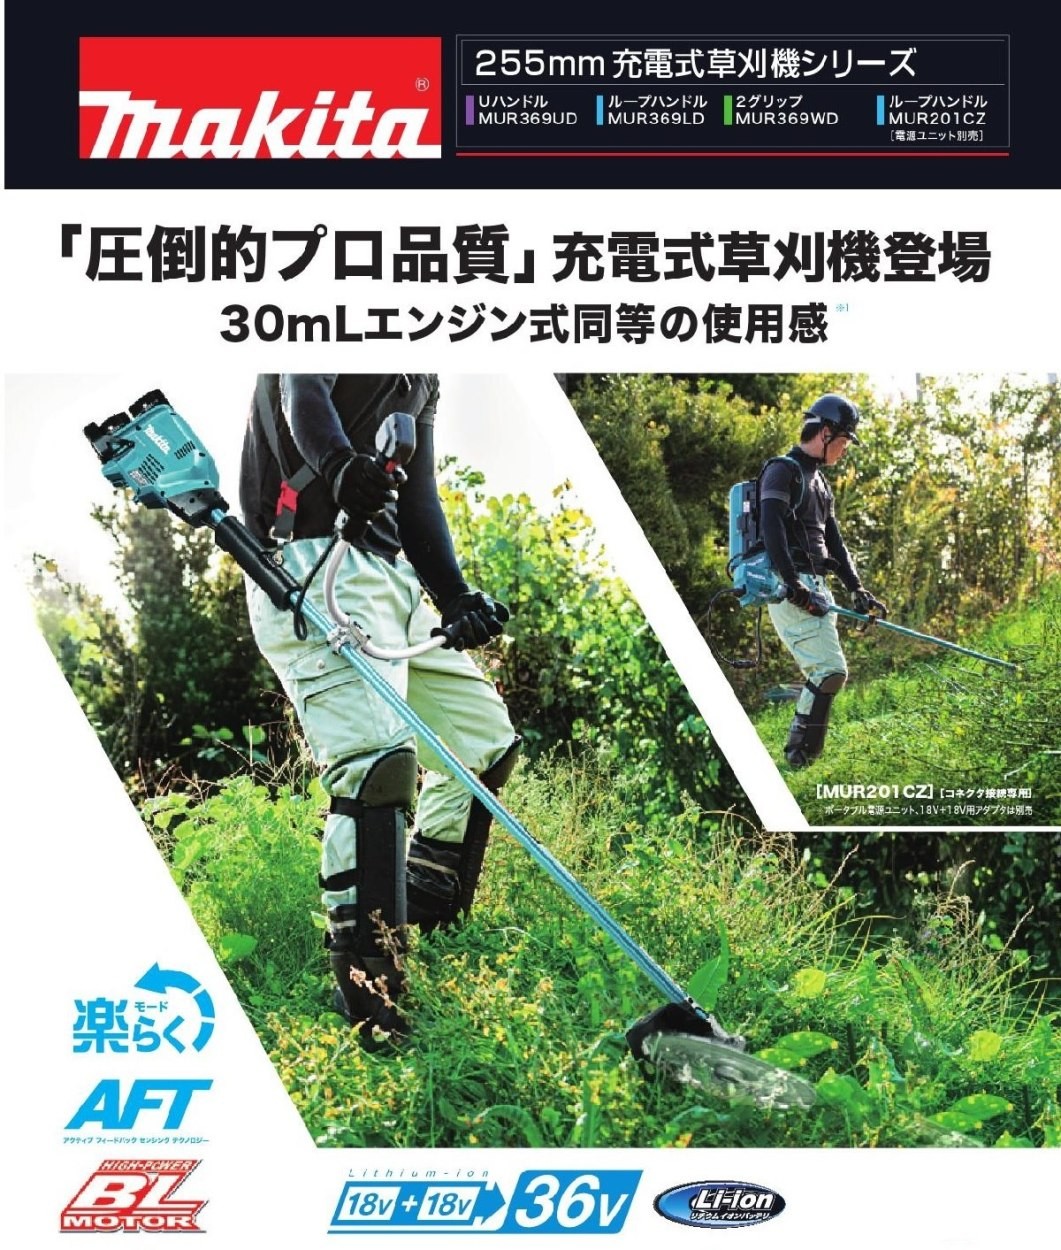 マキタ 充電式草刈り機 ループハンドル MUR369LDZ 18V+18V→36V  :MUR369LDZ:俺の道具 通販 